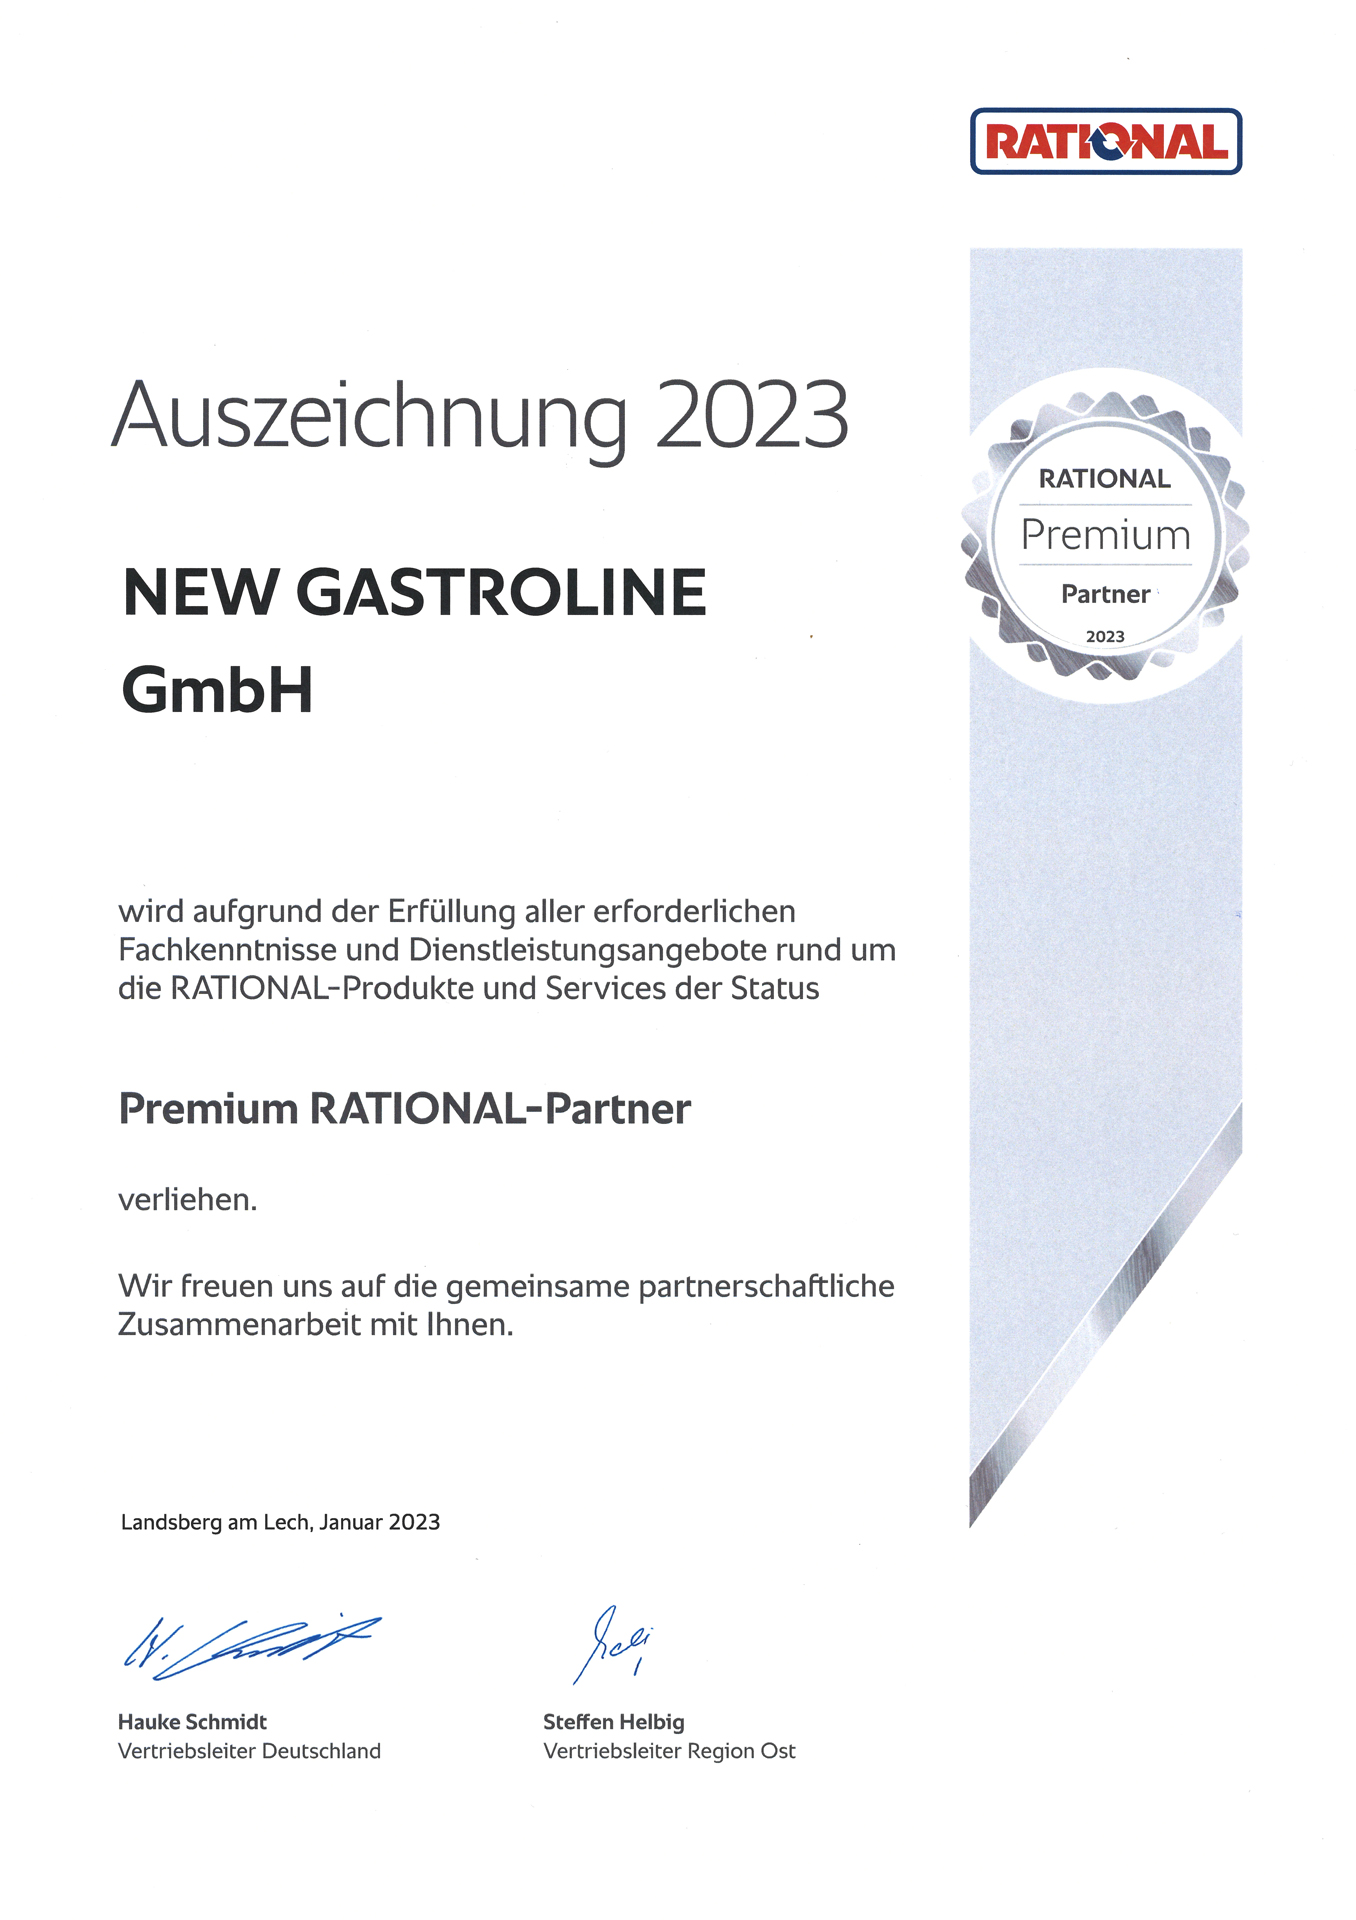 Premium RATIONAL-Partner 2023